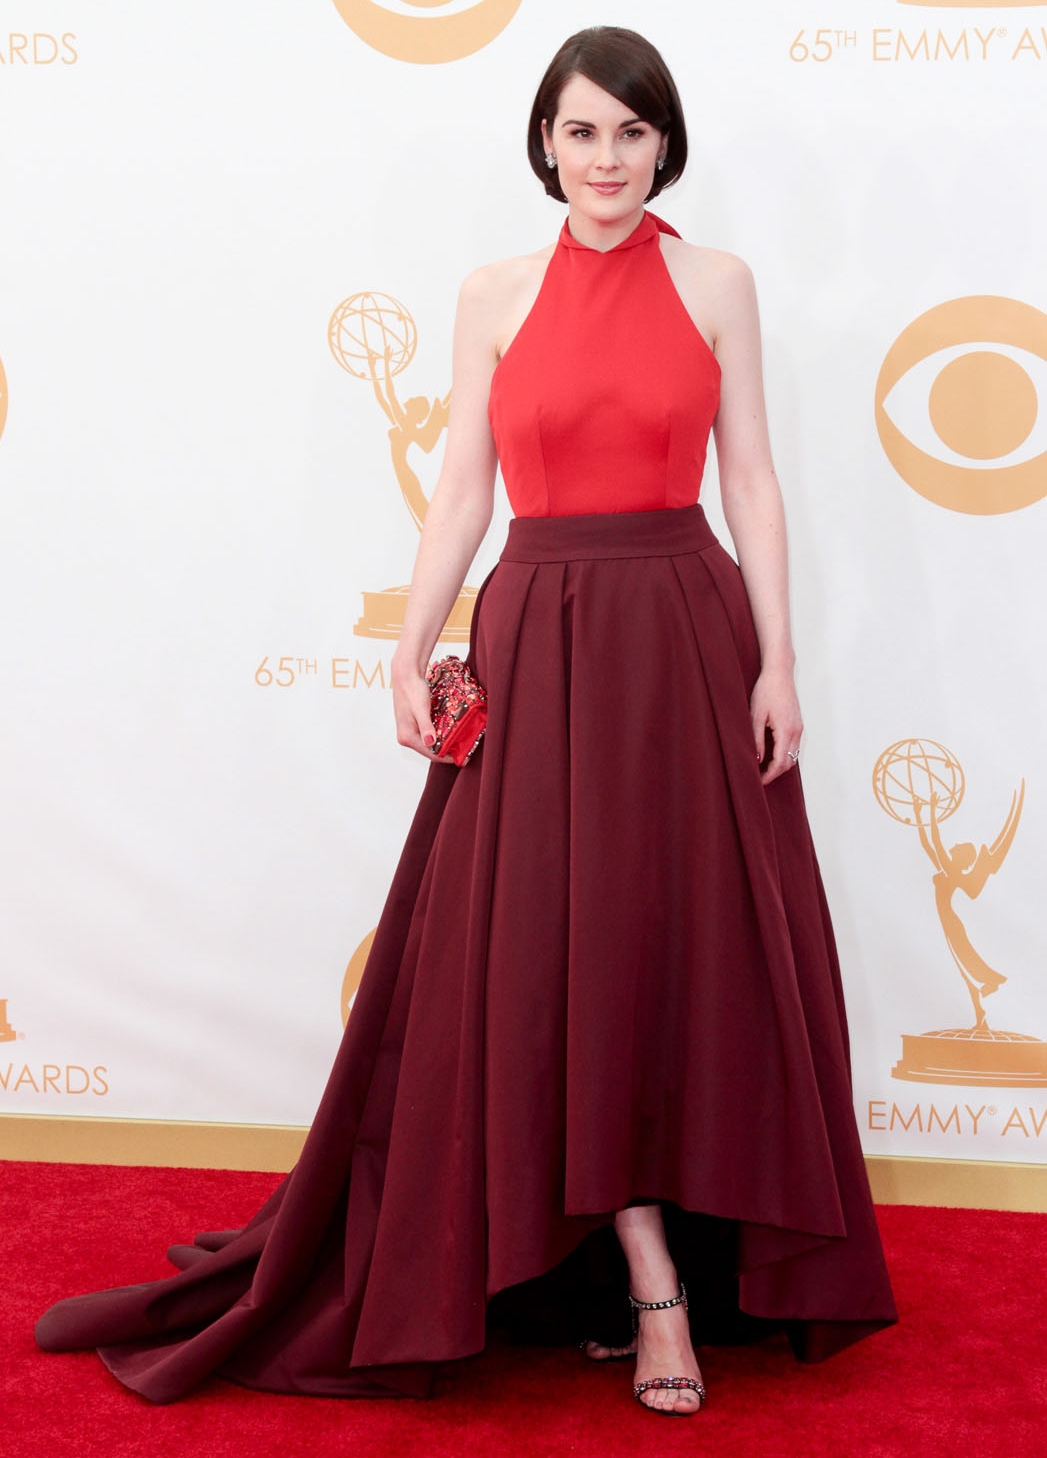 Sofia Vergara, Christina Hendricks, Cobie Smulders i inne gwiazdy na rozdaniu nagród Emmy 2013